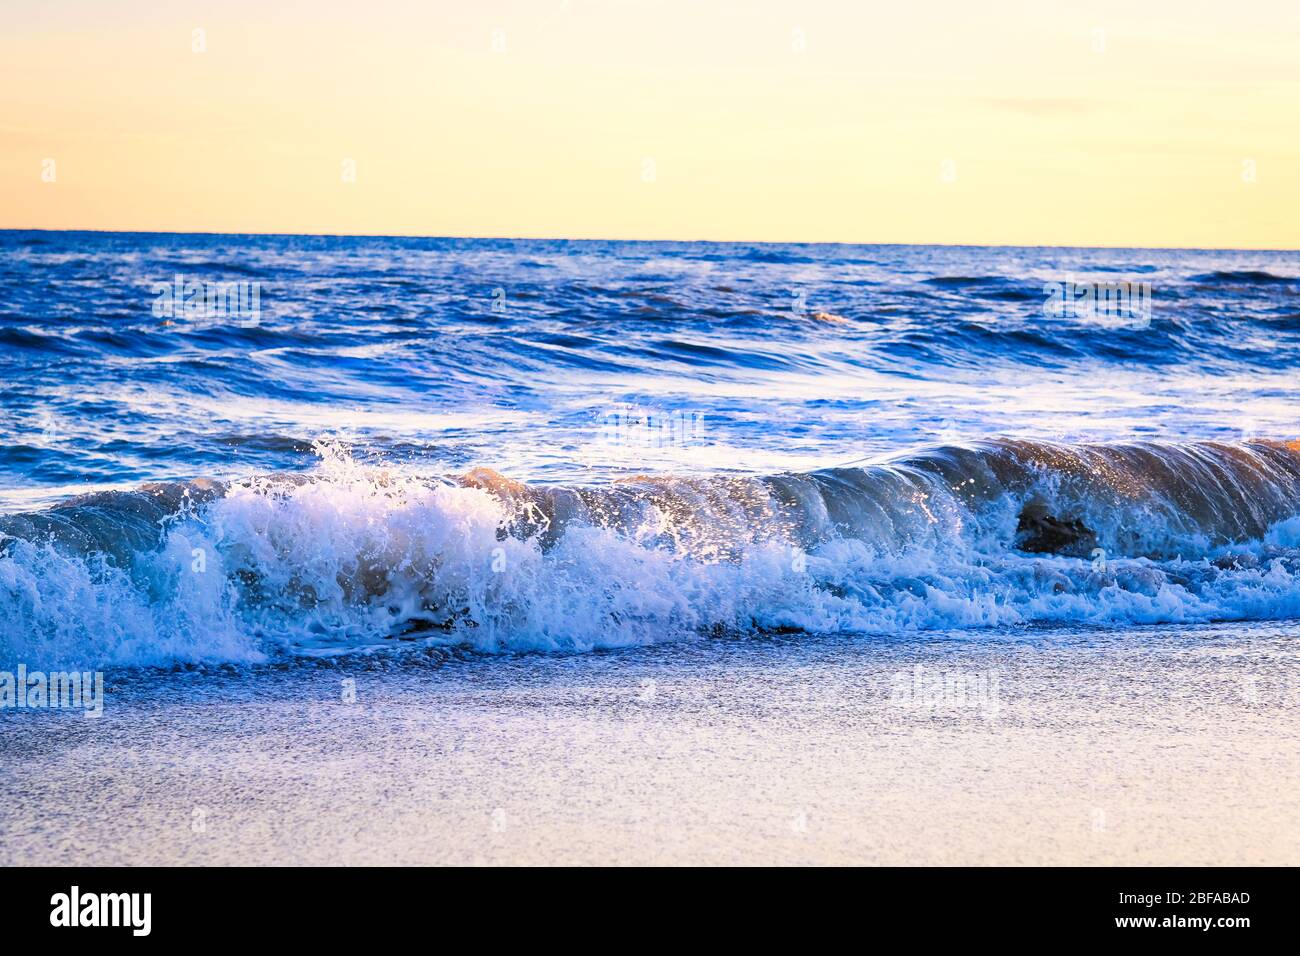 Coucher de soleil sur la plage avec des vagues étincelantes incroyables. Coucher de soleil et vagues sur la plage spectaculaire. Bleu et jaune infini Banque D'Images